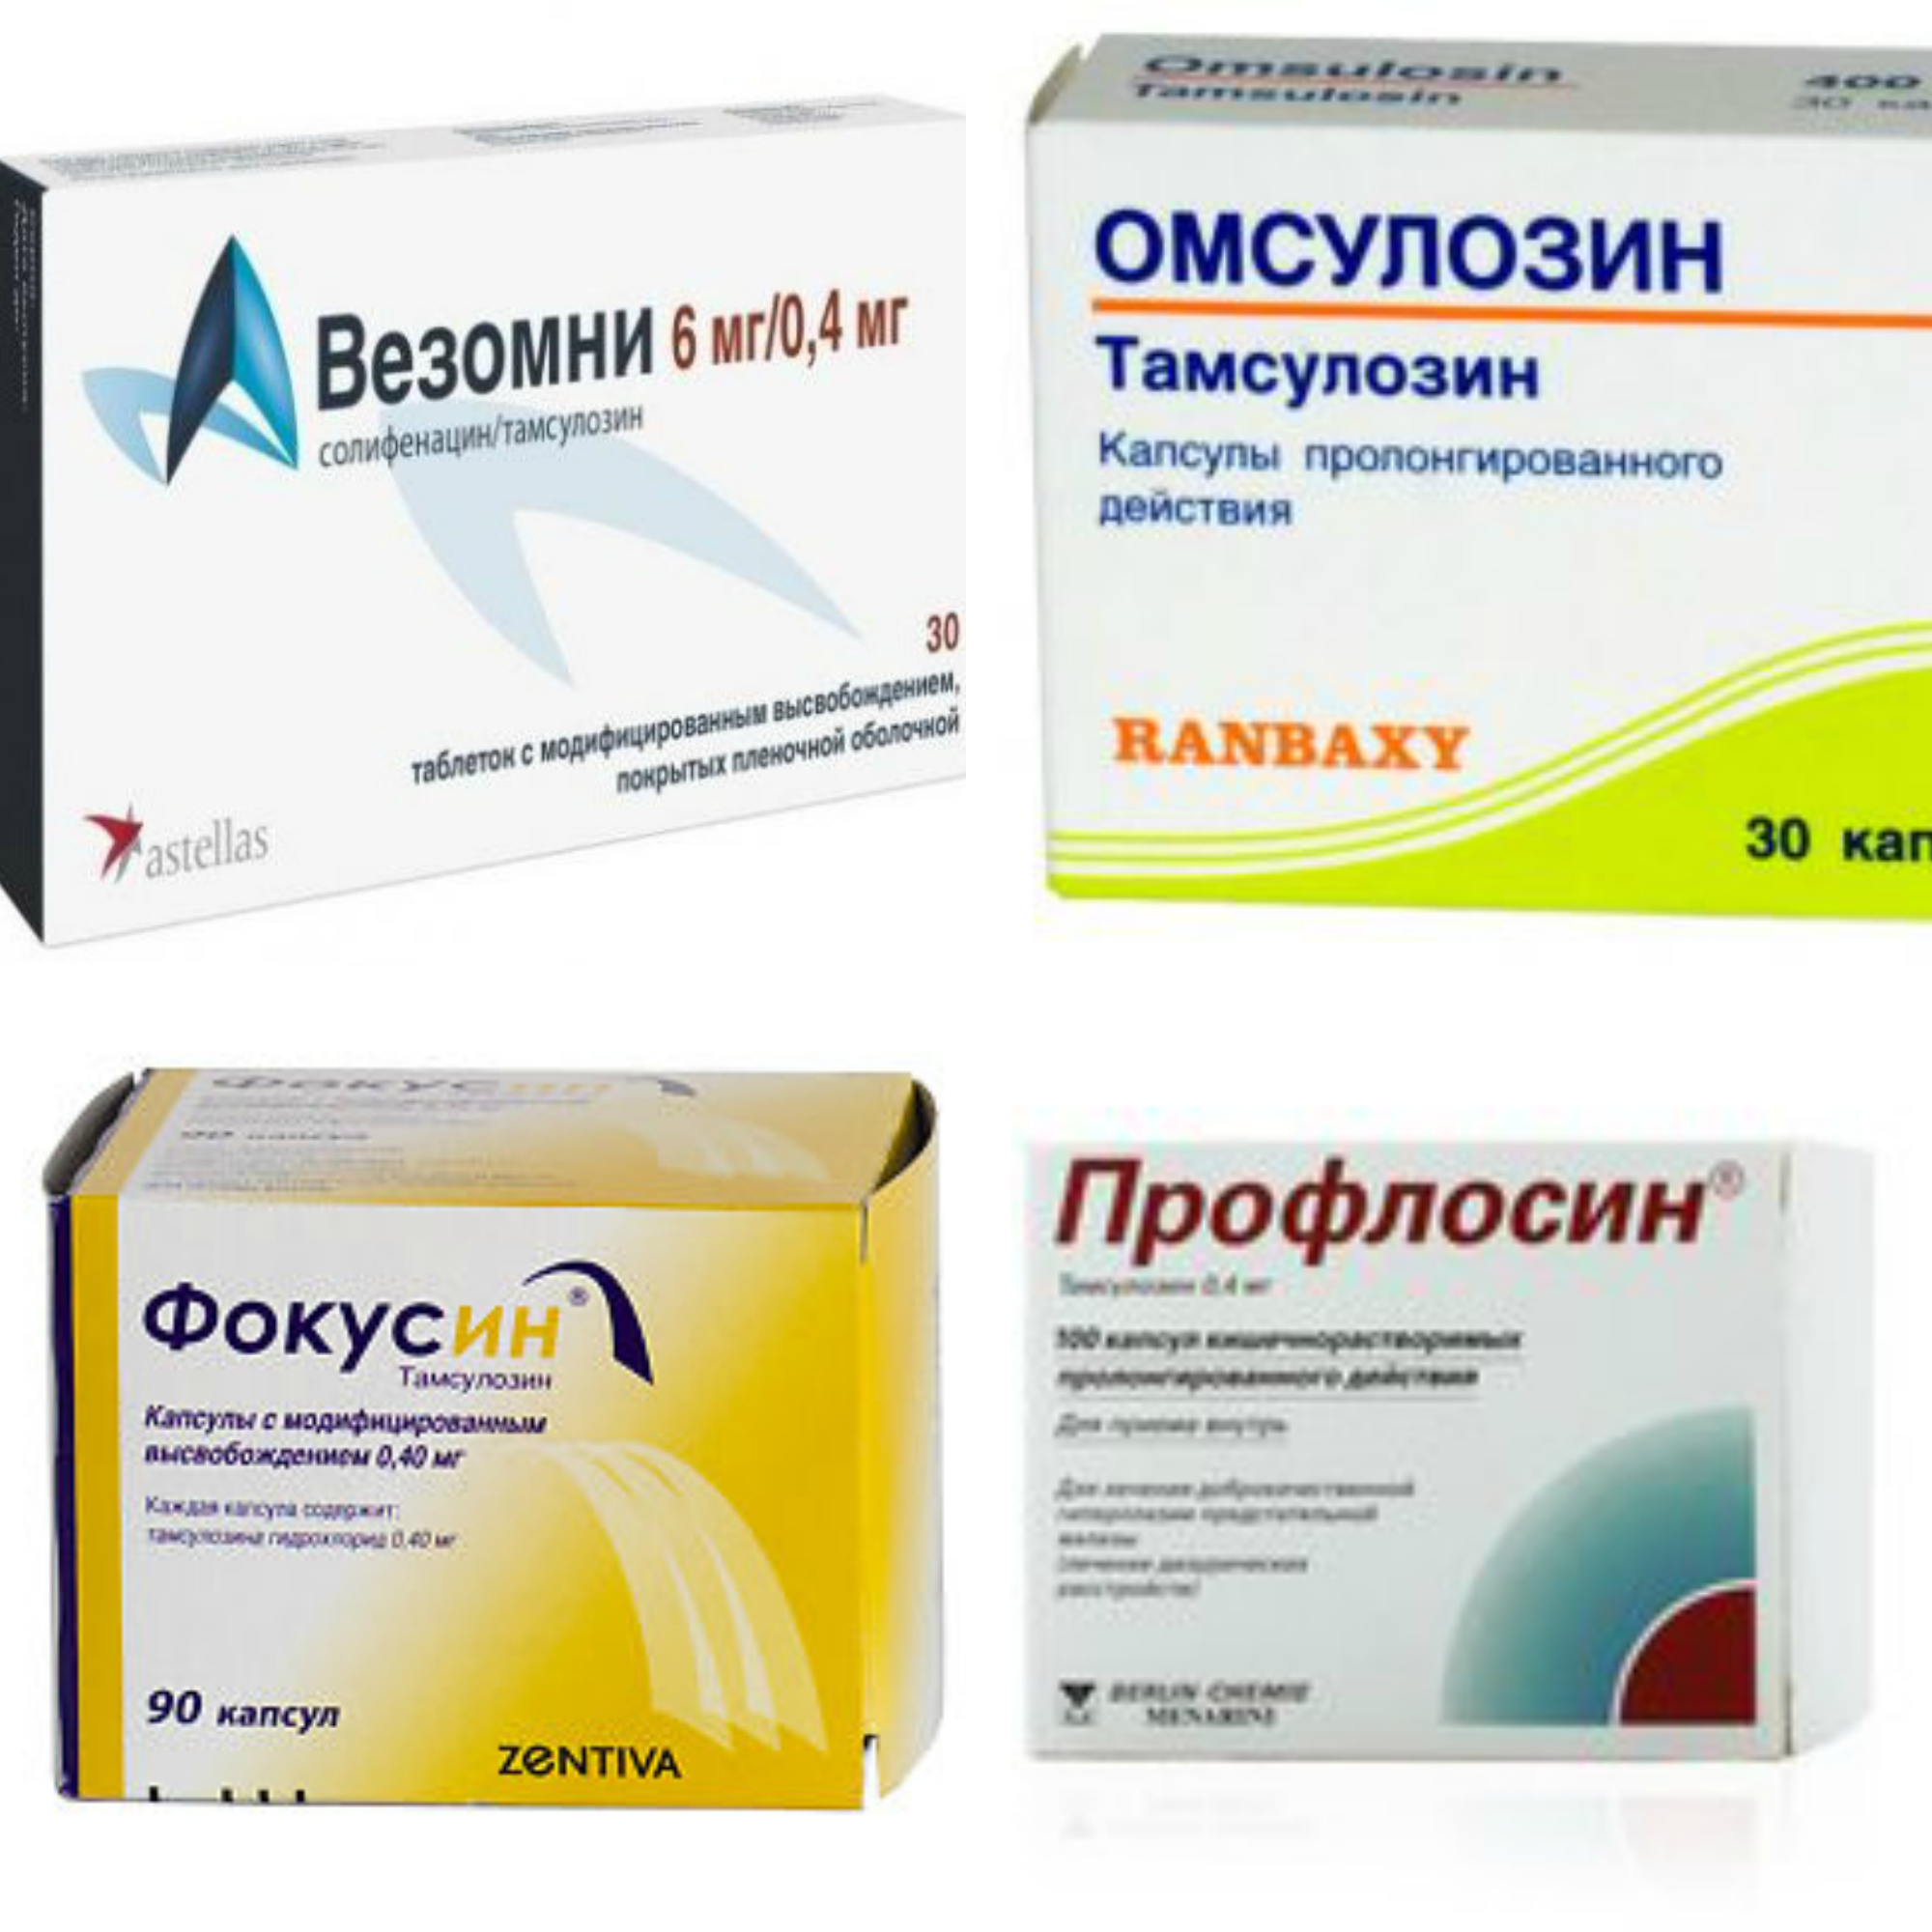 Аналоги лекарства Везомни: препараты, цены и отзывы